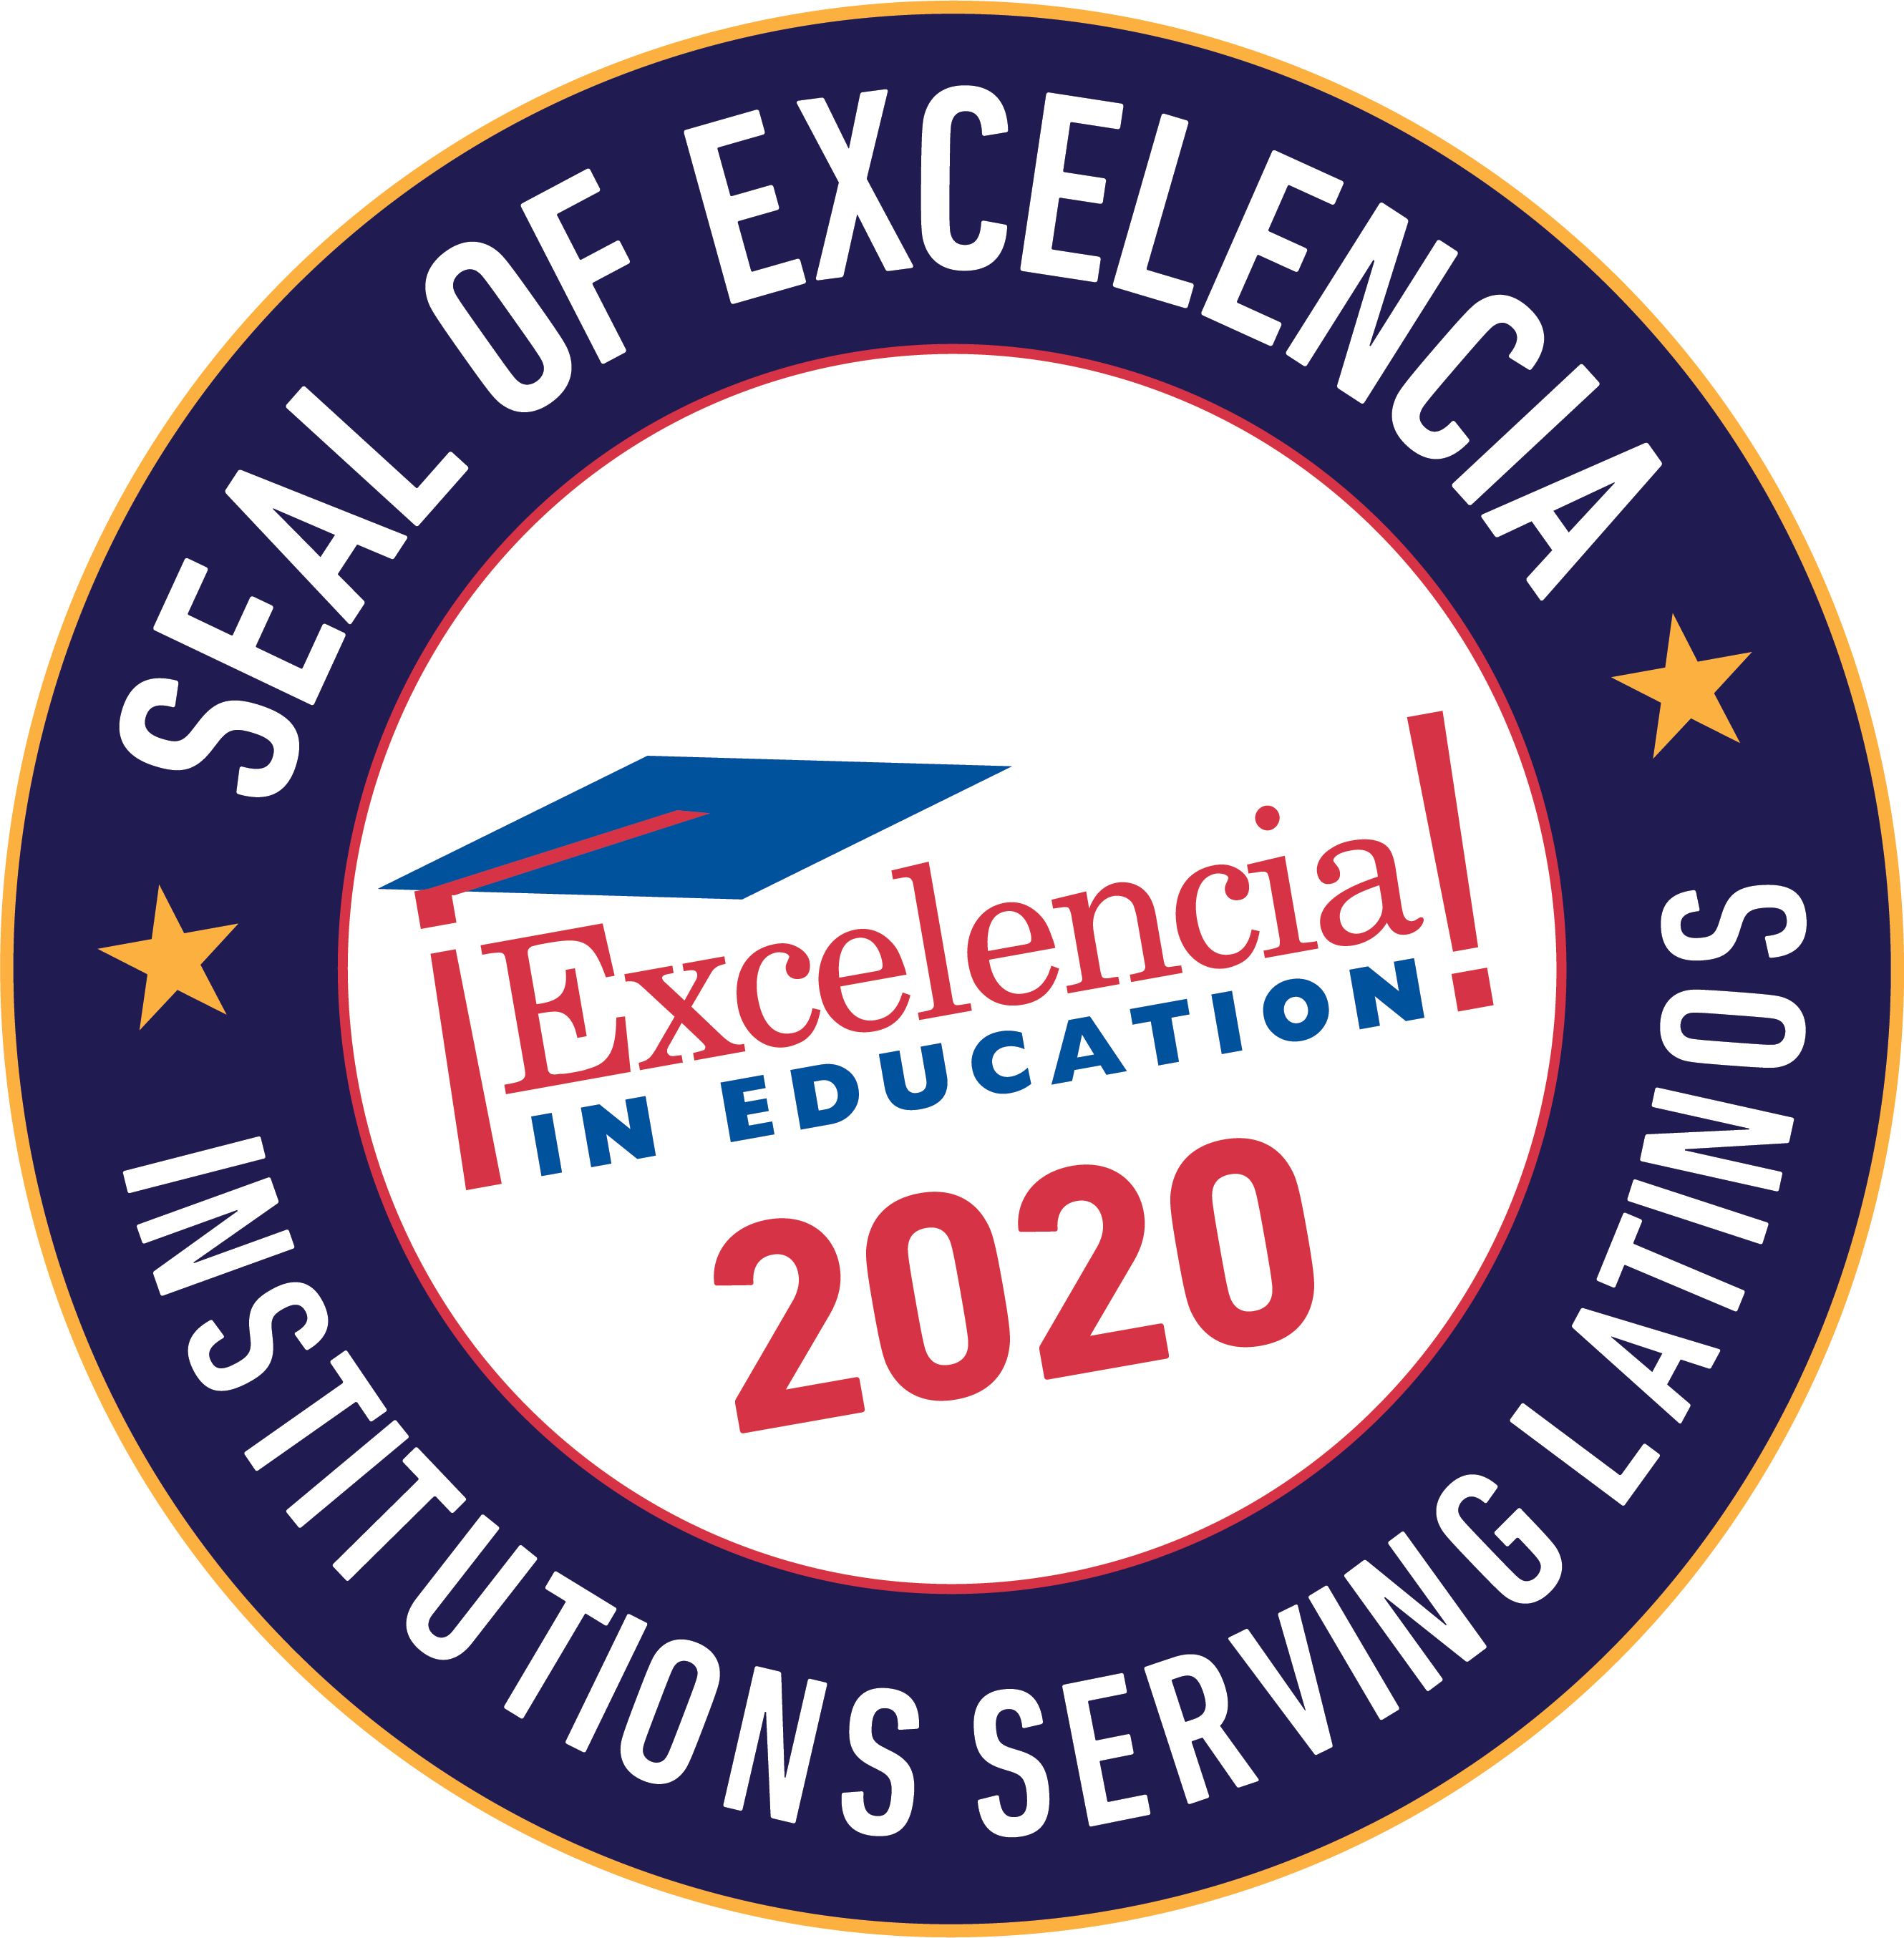 Official Seal of Excelencia